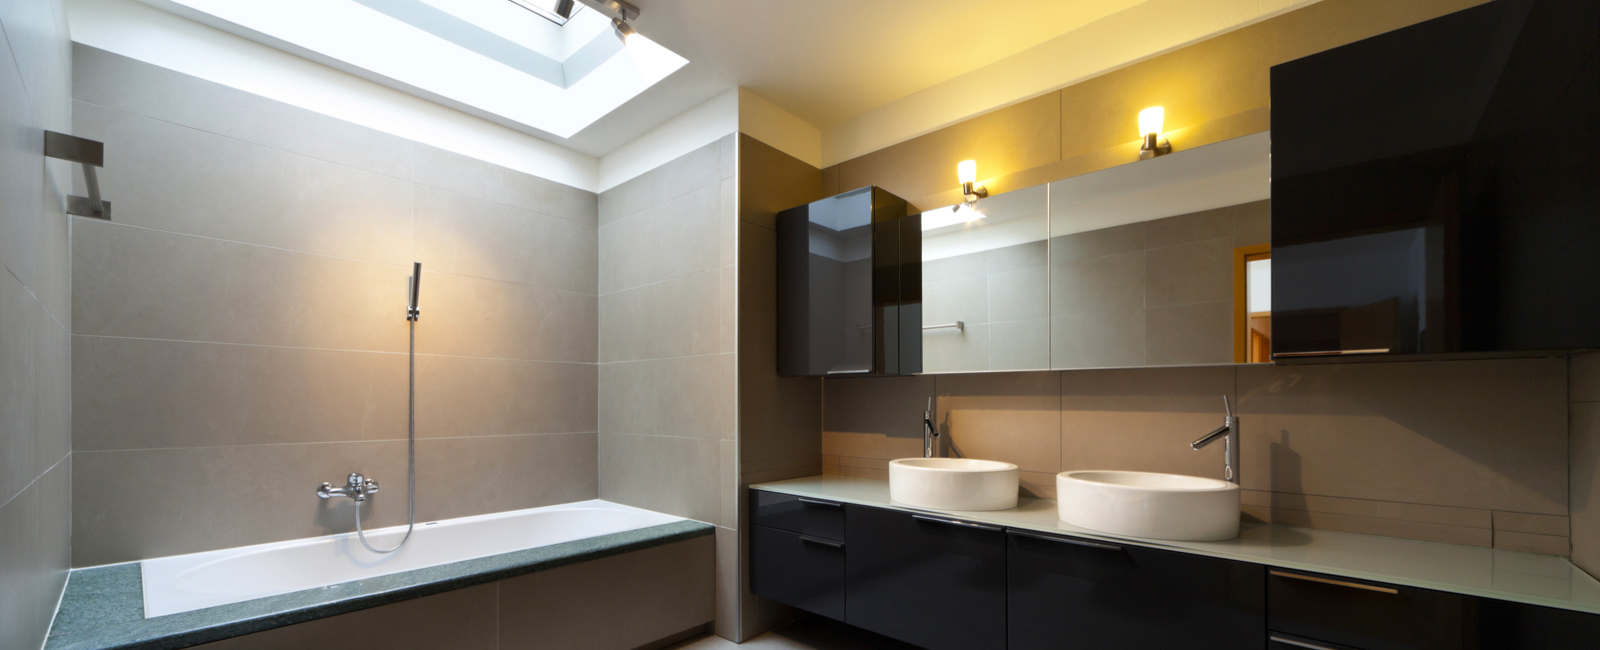 Comment choisir le luminaire pour salle de bain? Nos propositions